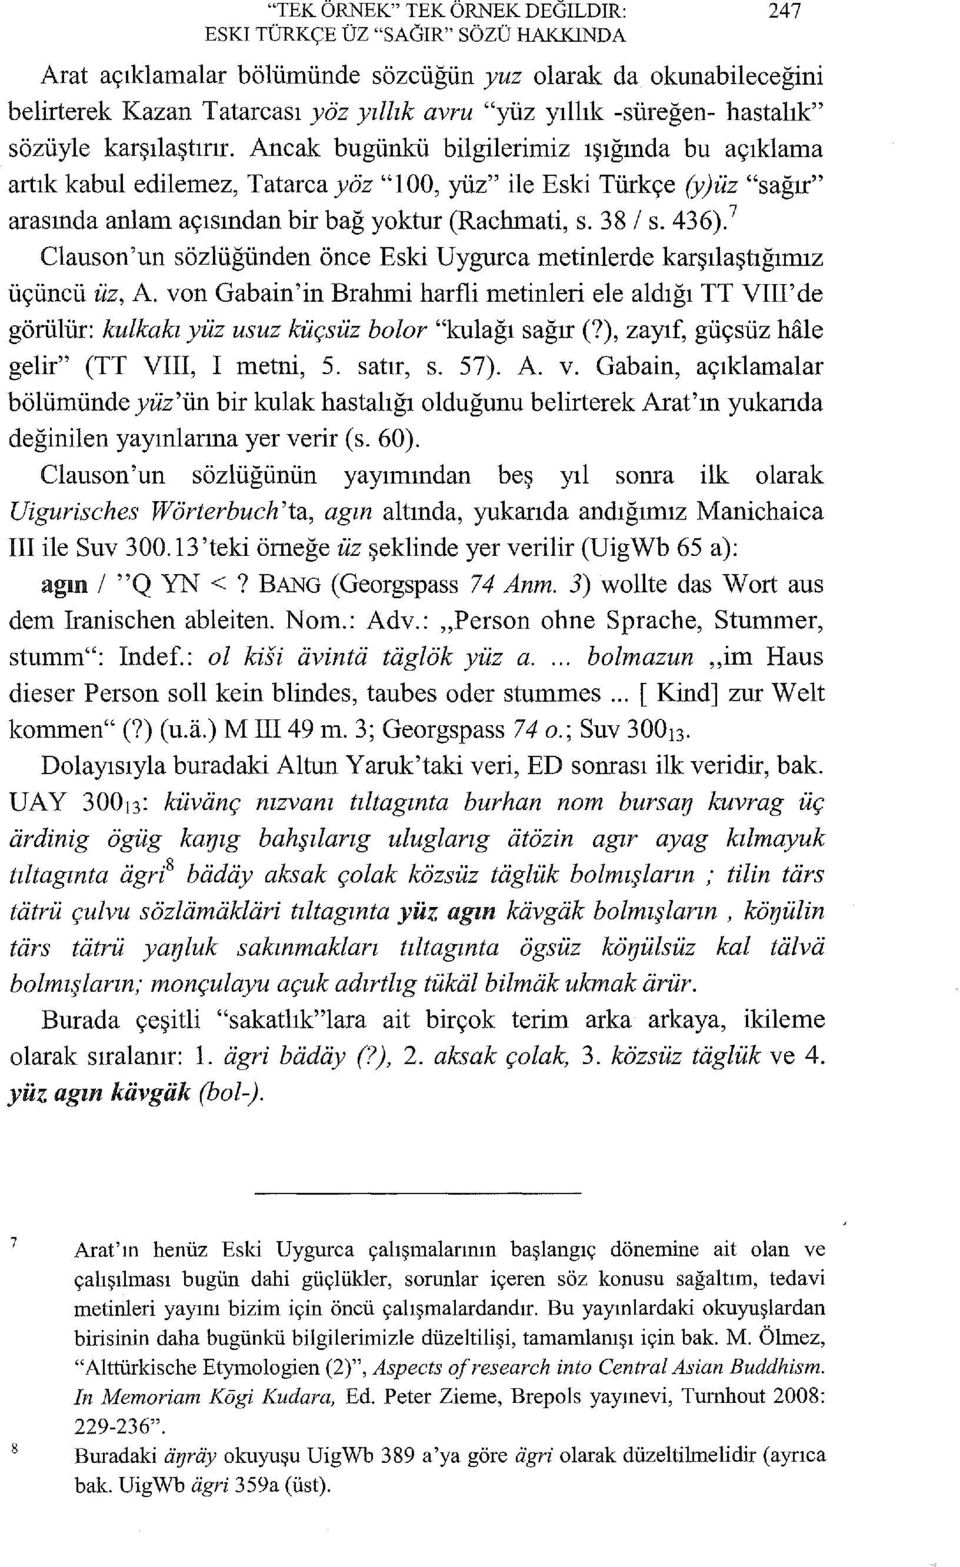 Ancak bugünkü bilgilerimiz ışığında bu açıklama artık kabul edilemez, Tatarca yöz "100, yüz" ile Eski Türkçe (y)üz "sağır" arasında anlam açısından bir bağ yoktur (Rachmati, s. 38 1 s. 436).